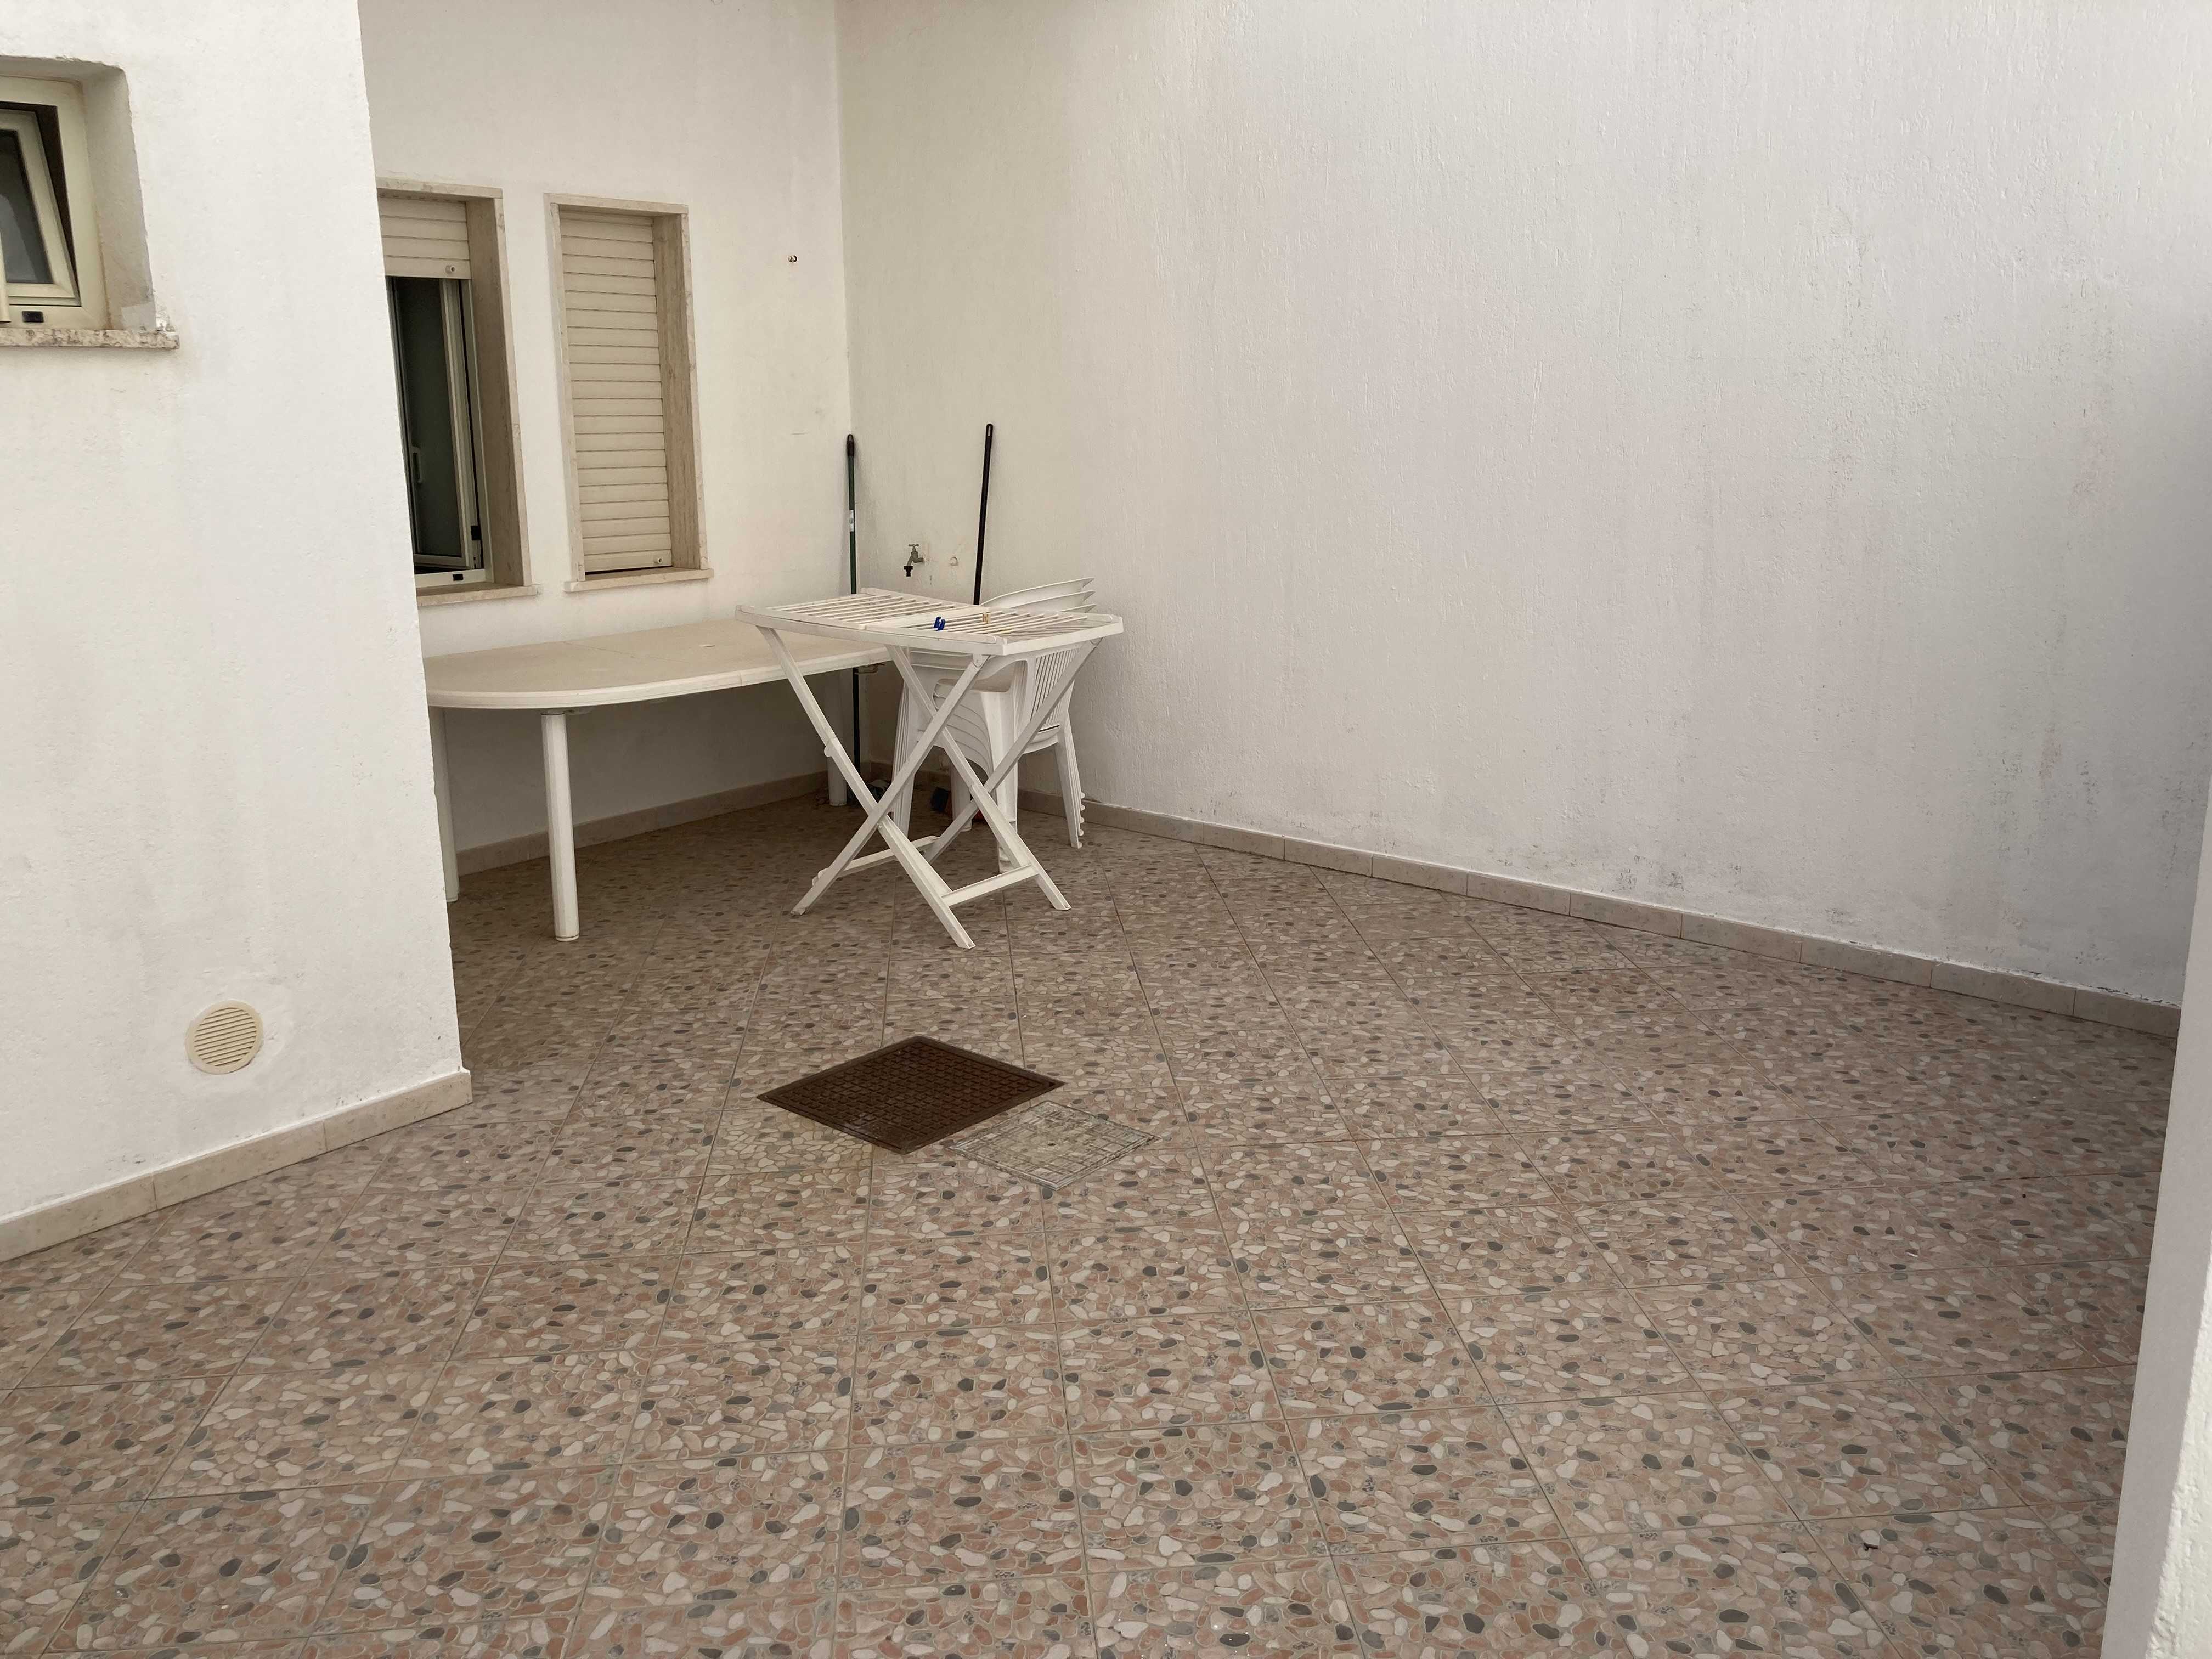 Vendite Salento: Vendita appartamento (Castrignano del Capo) - terrazzo1